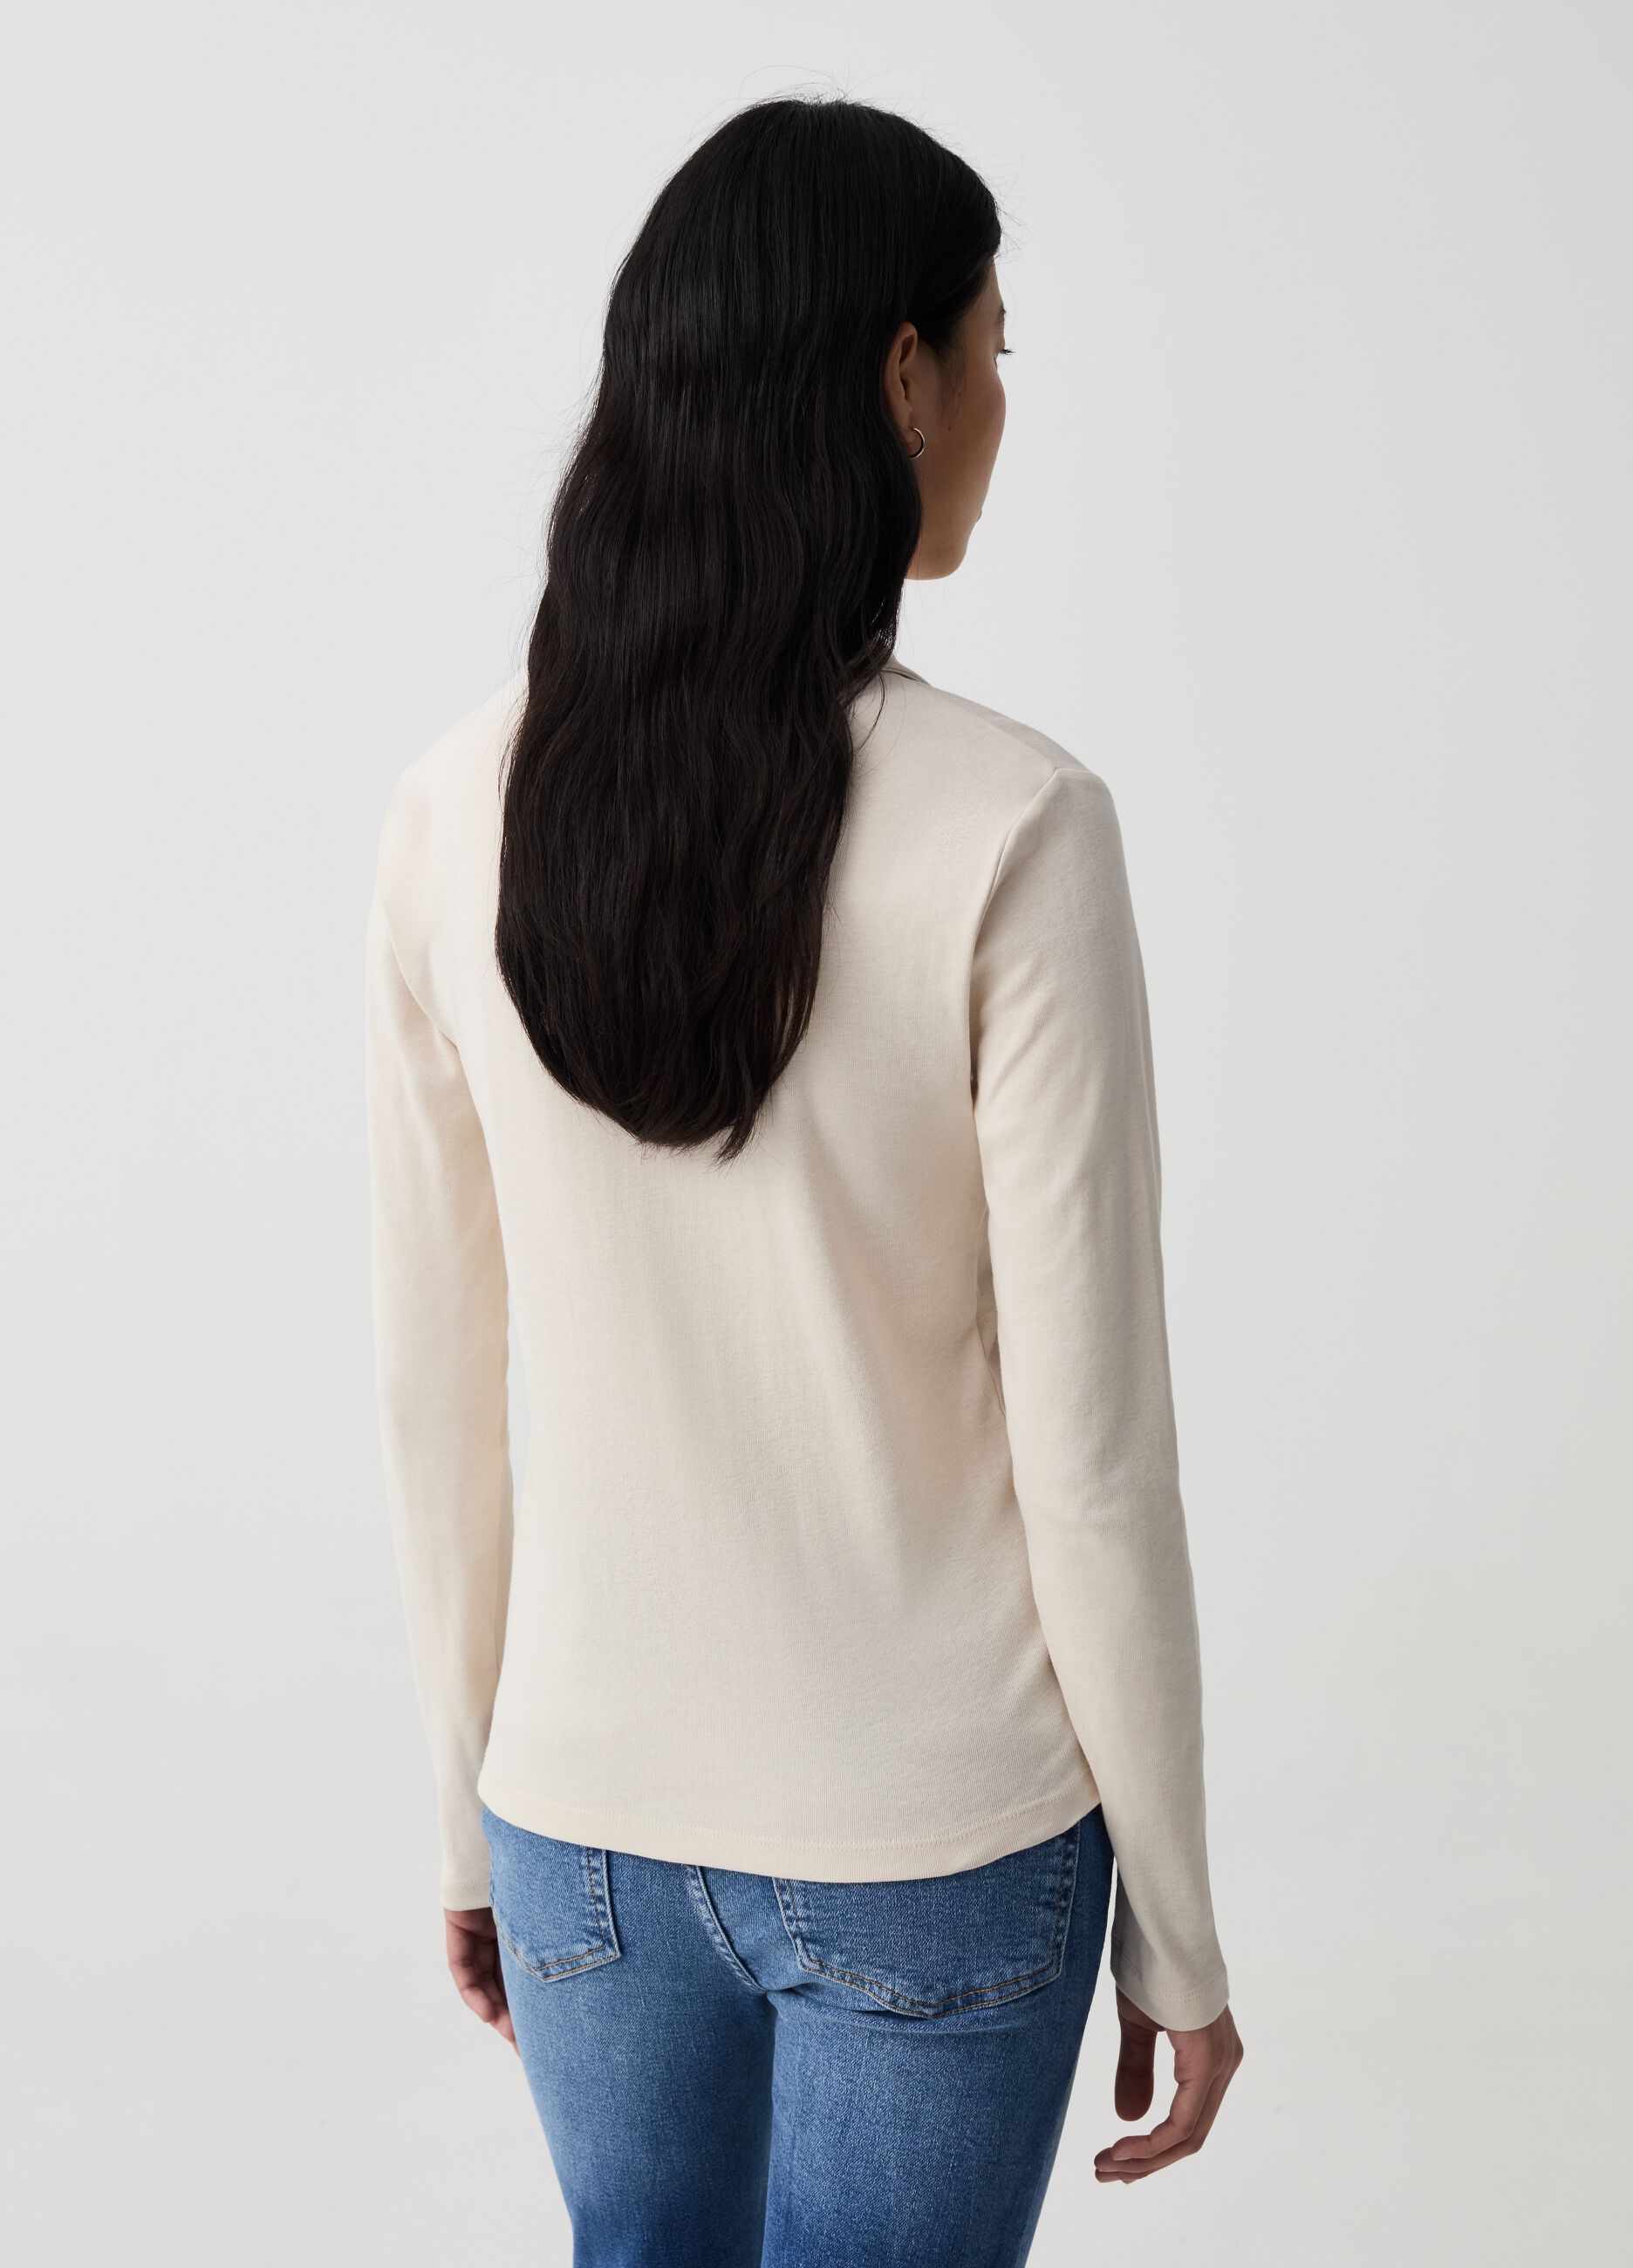 Camiseta de manga larga con cuello tipo polo